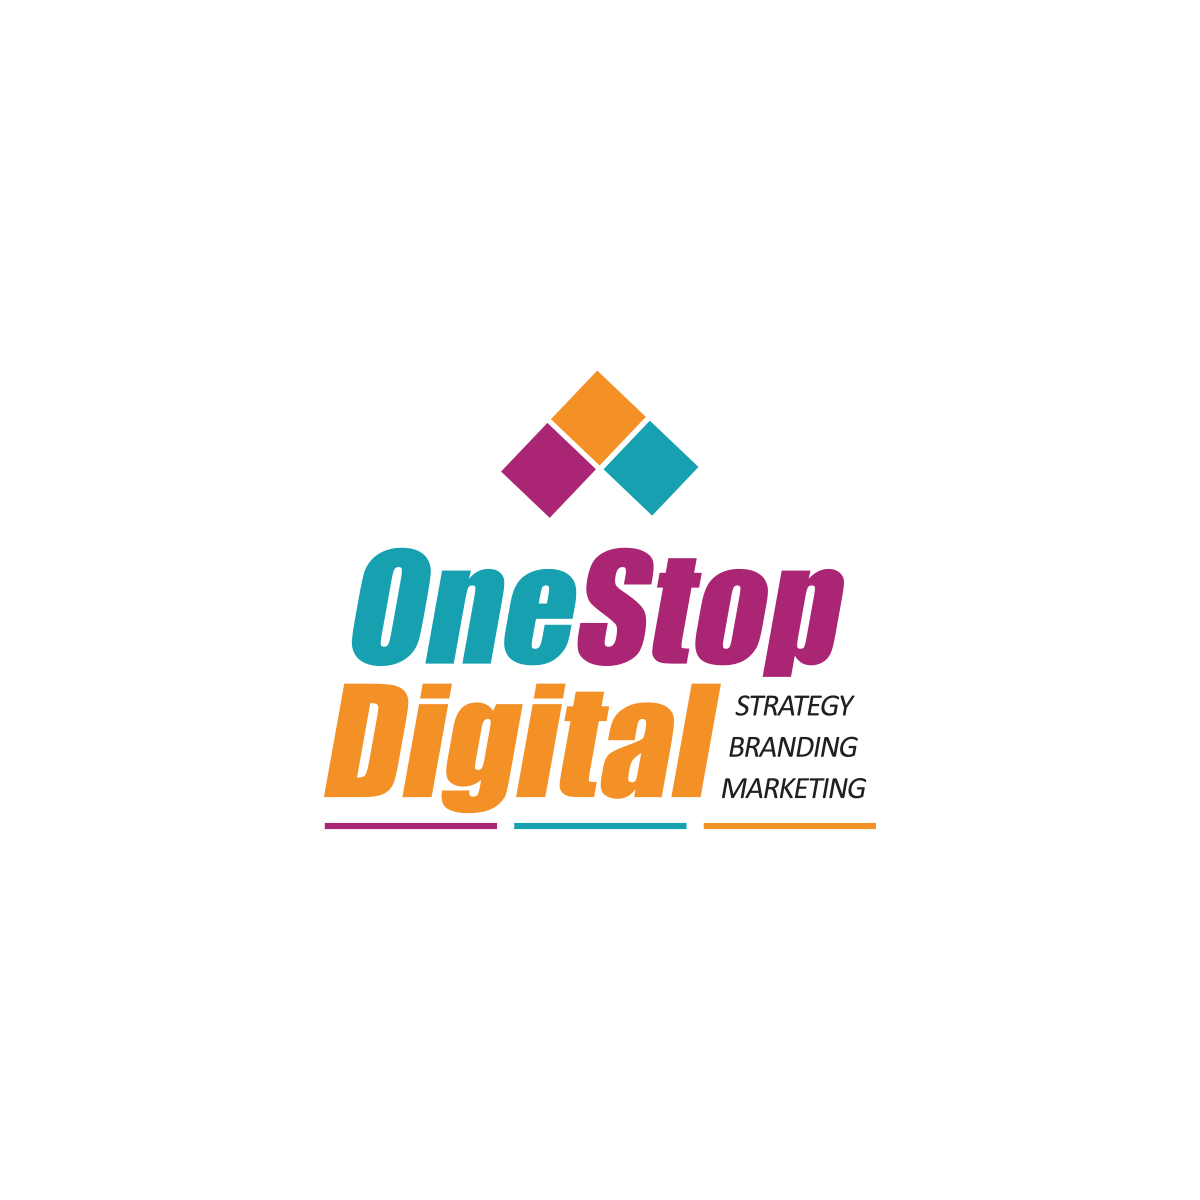 לוגו לסוכנות דיגיטל One Stop Digital